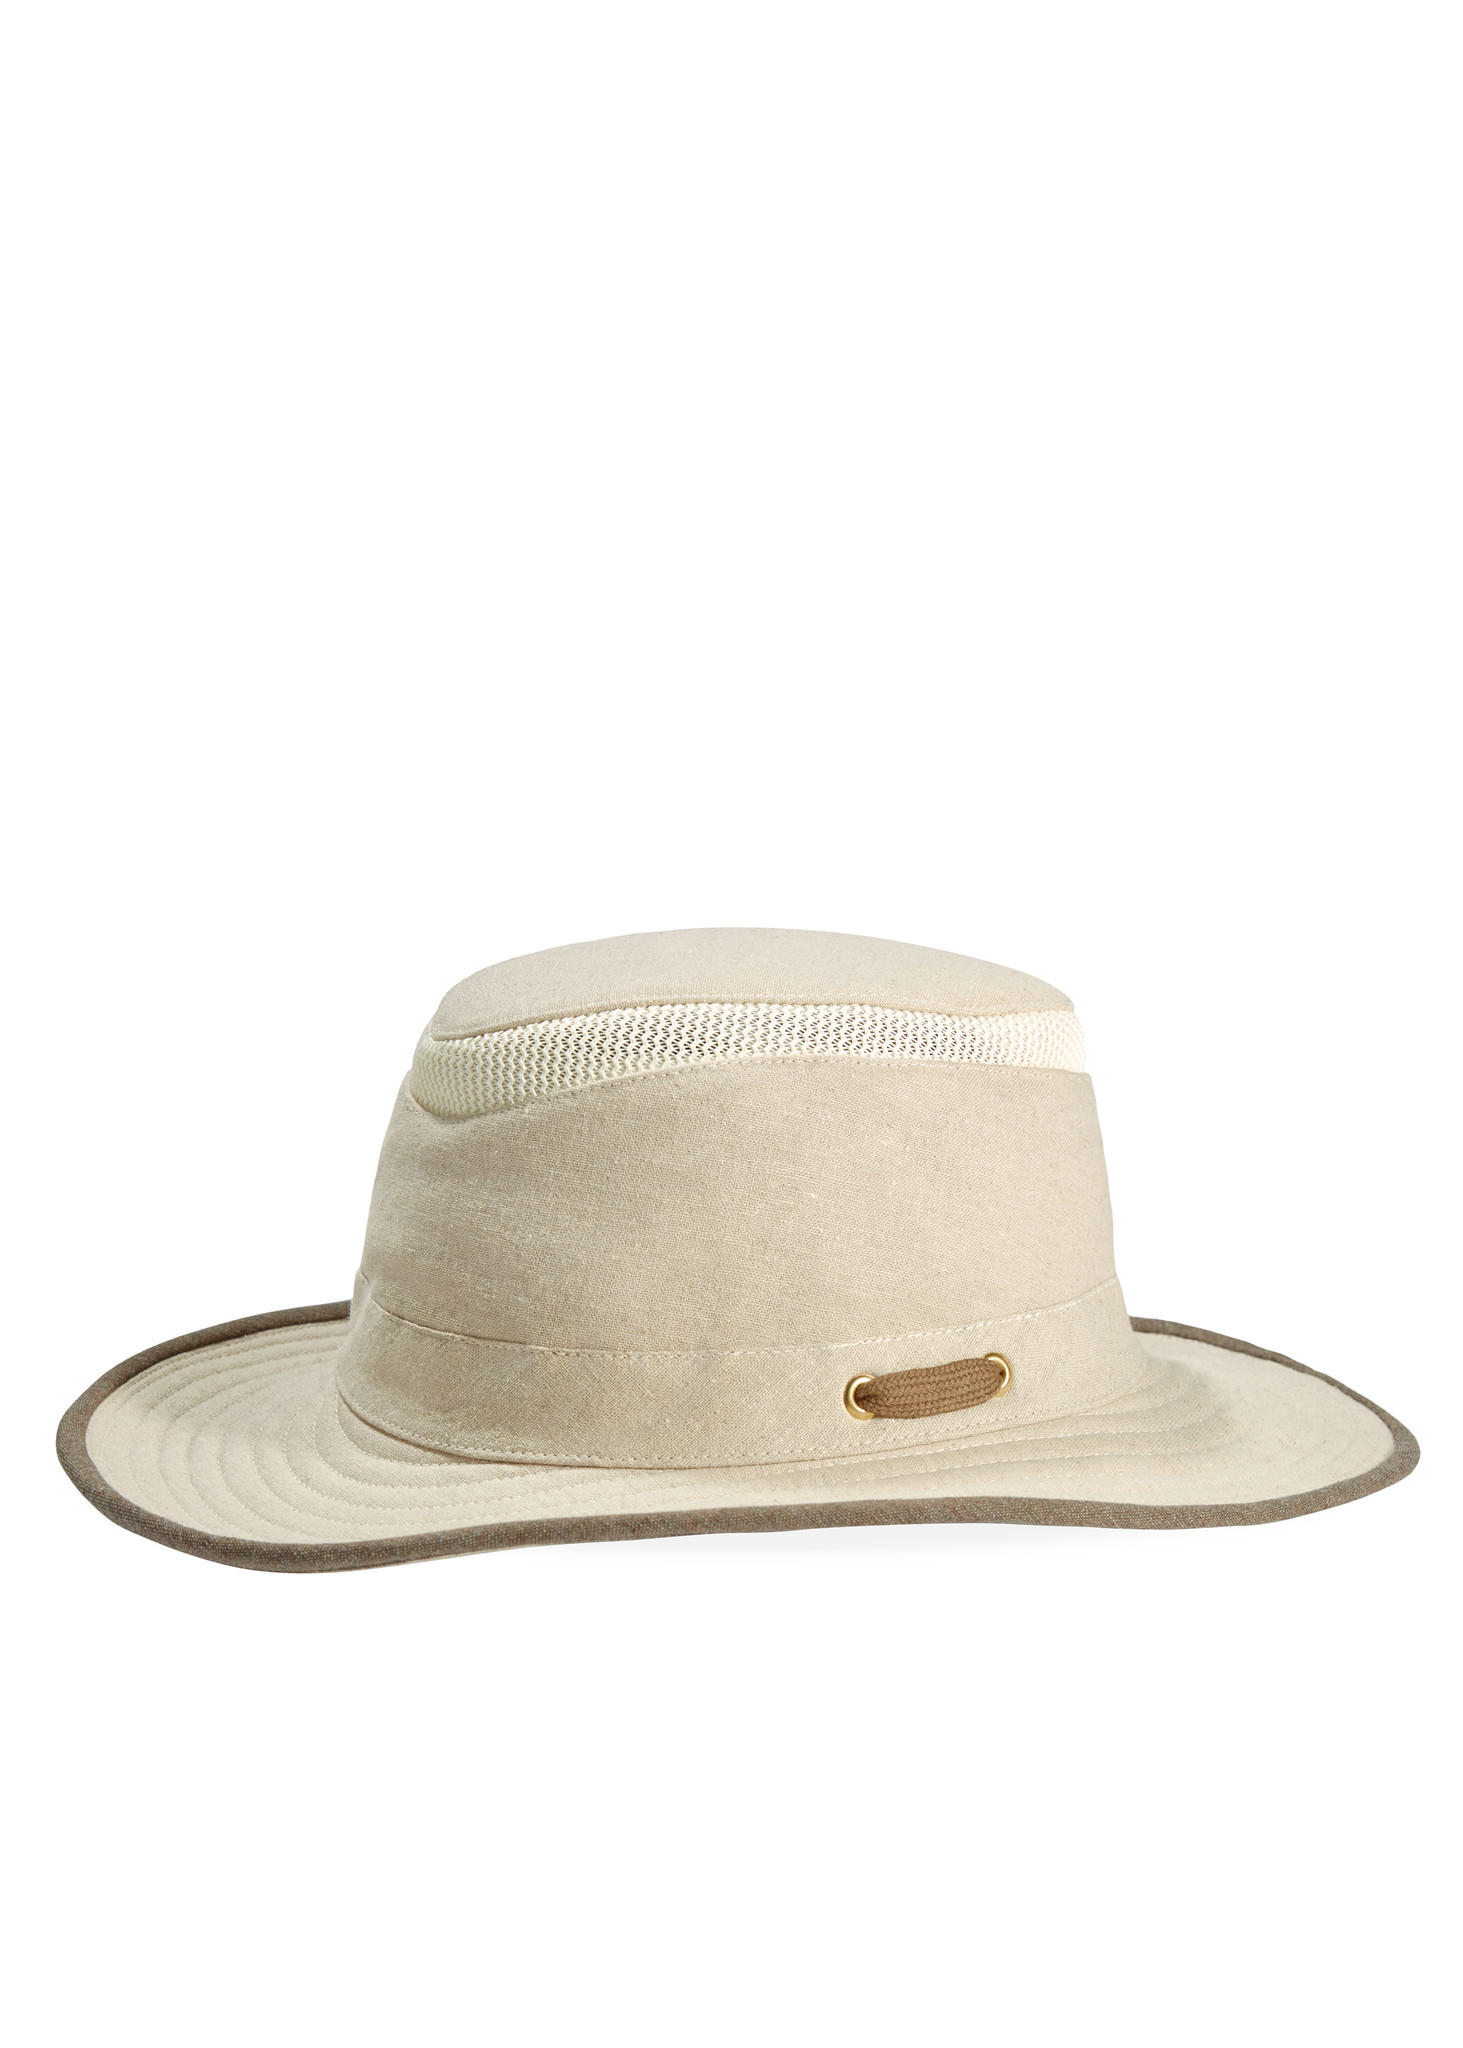 TMH55 AIRFLO HAT - Granville Island Hat Shop